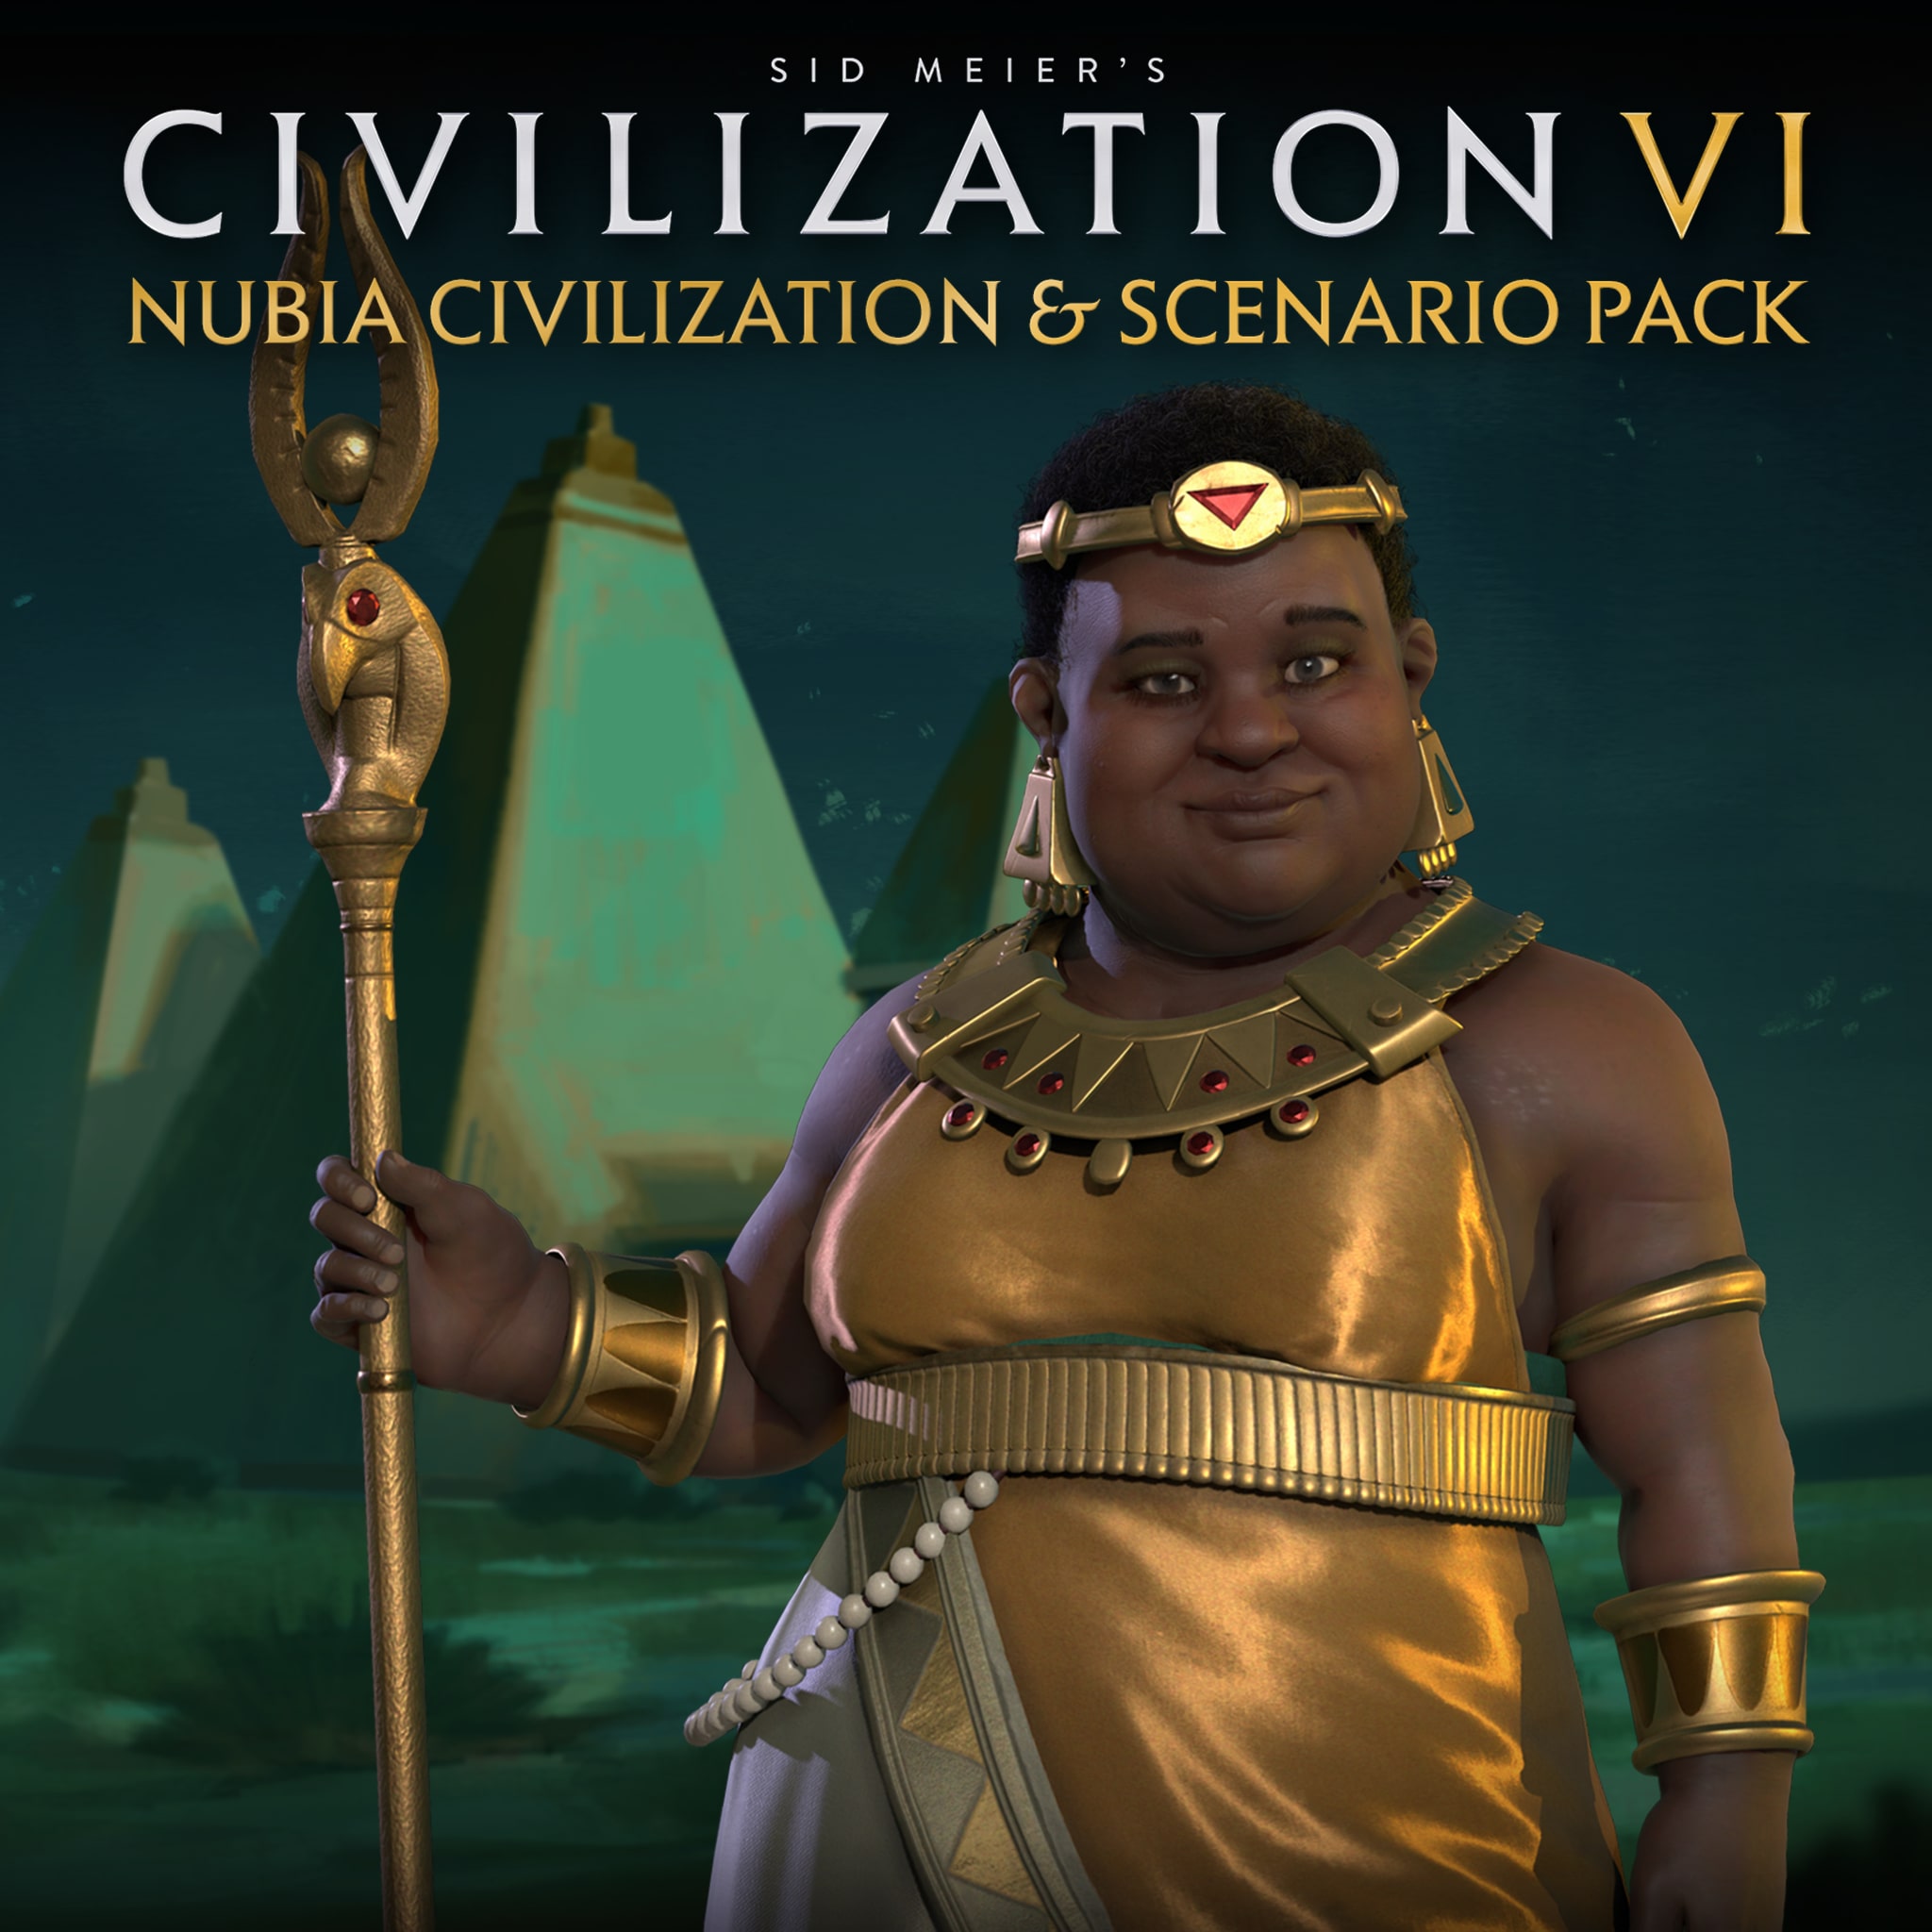 Civilization VI: Nubia Civilization & Scenario Pack